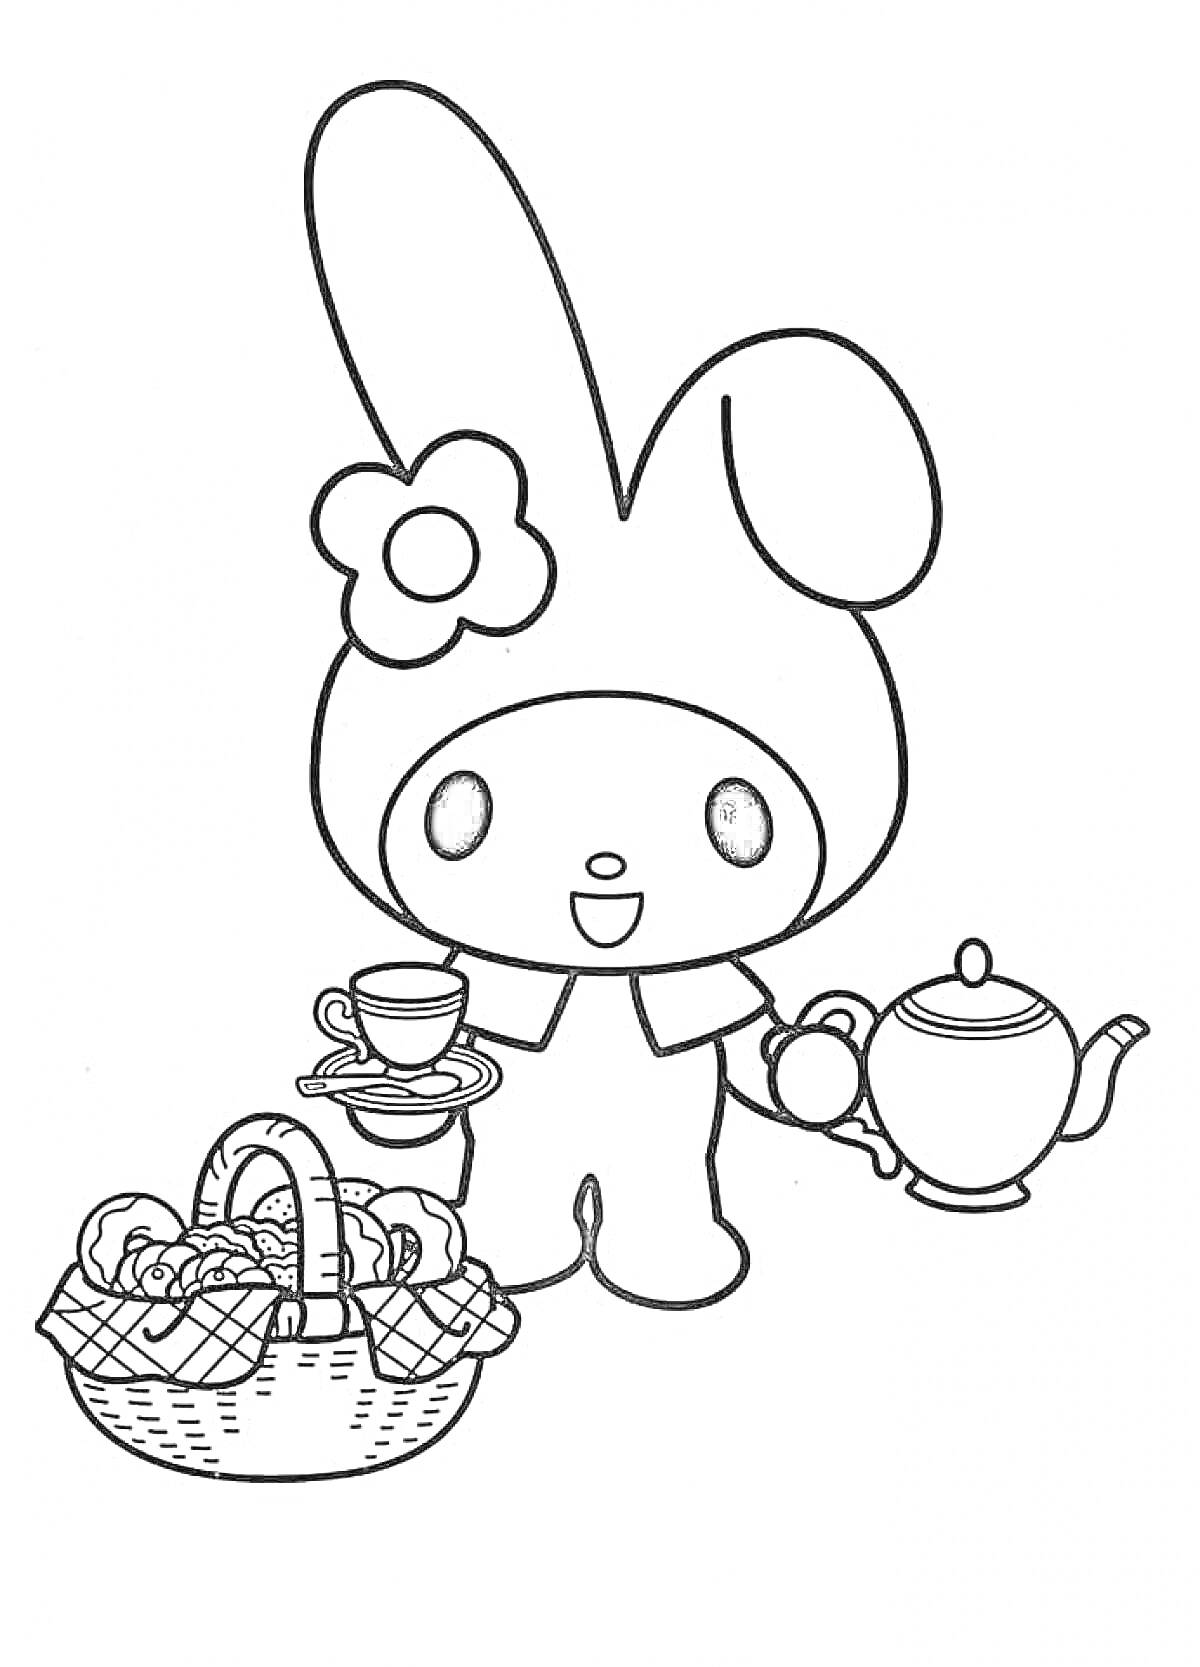 Раскраска Май Мелоди с чайником, чашкой и корзиной